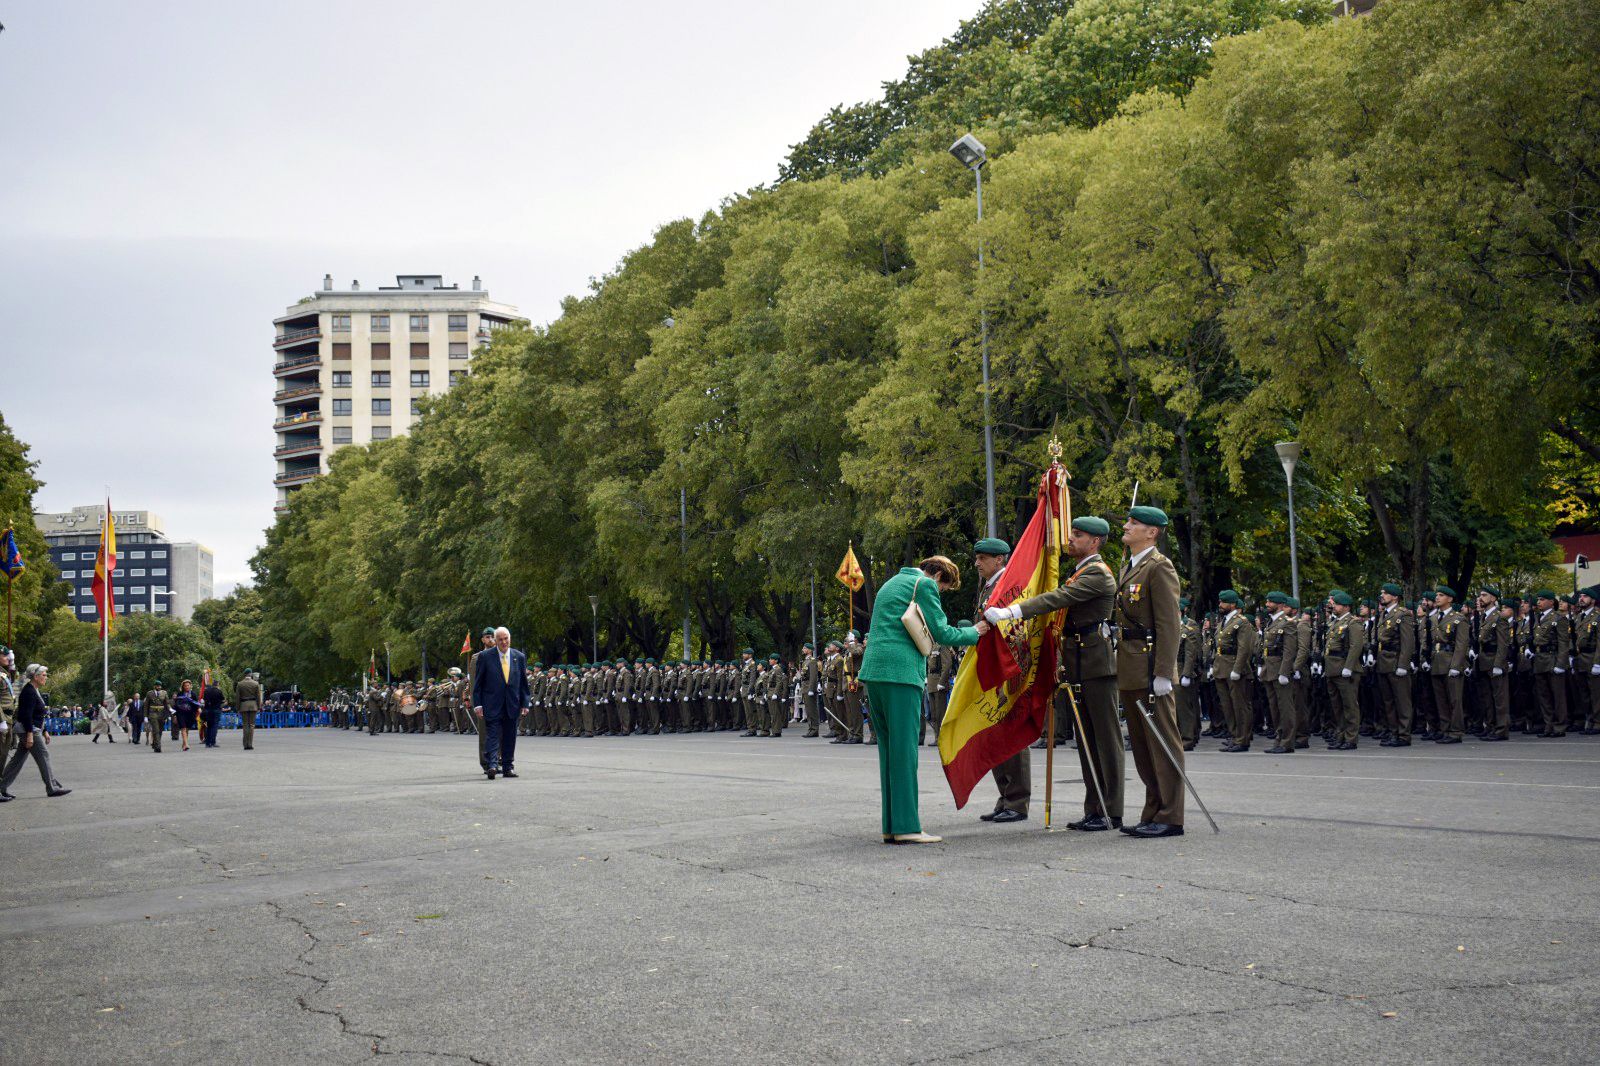 El JEME y el Alcalde de Pamplona presiden la Jura de Bandera para personal civil en el parque Antoniutti